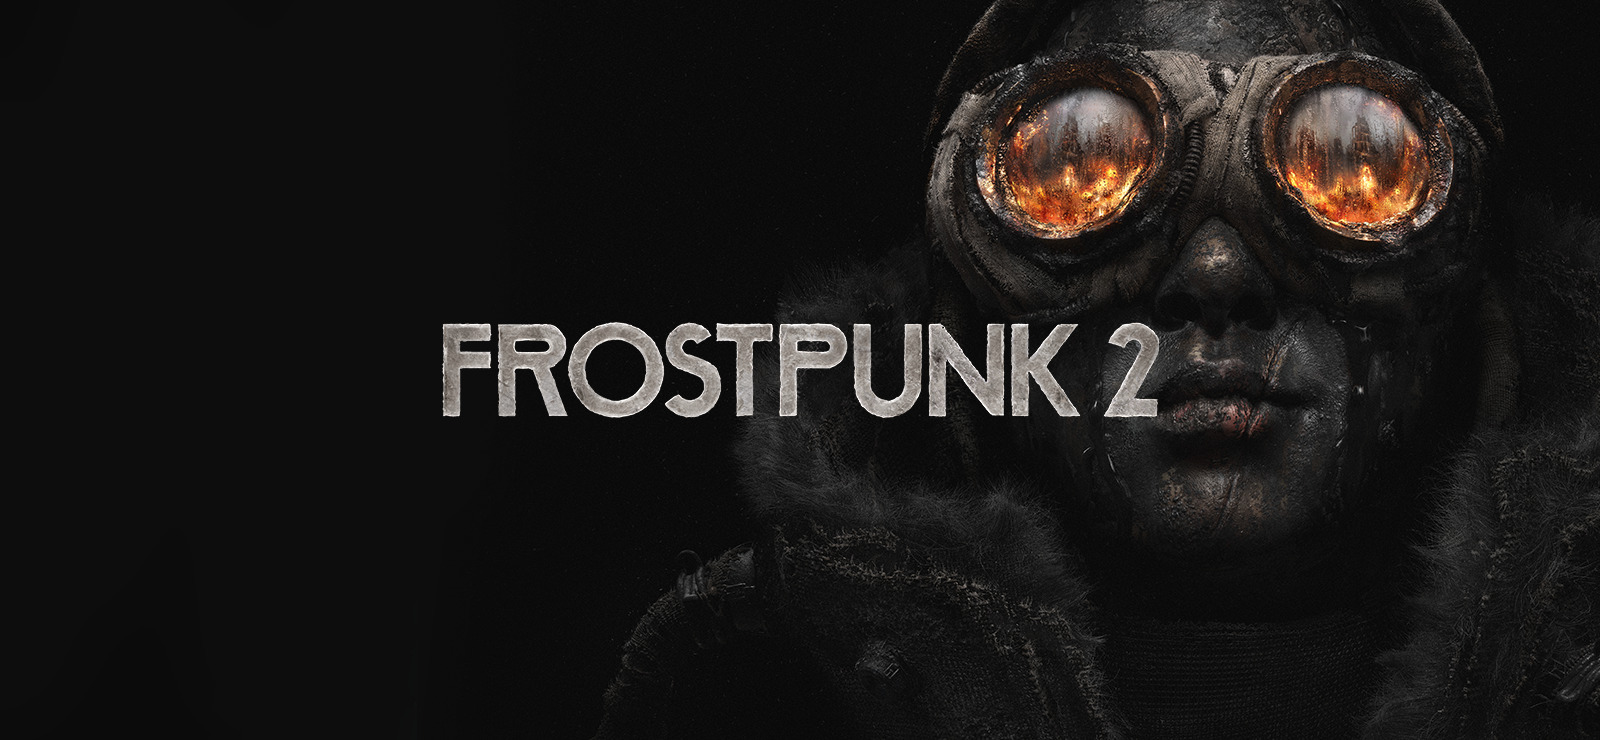 De premières images qui donnent chaud pour Frostpunk 2